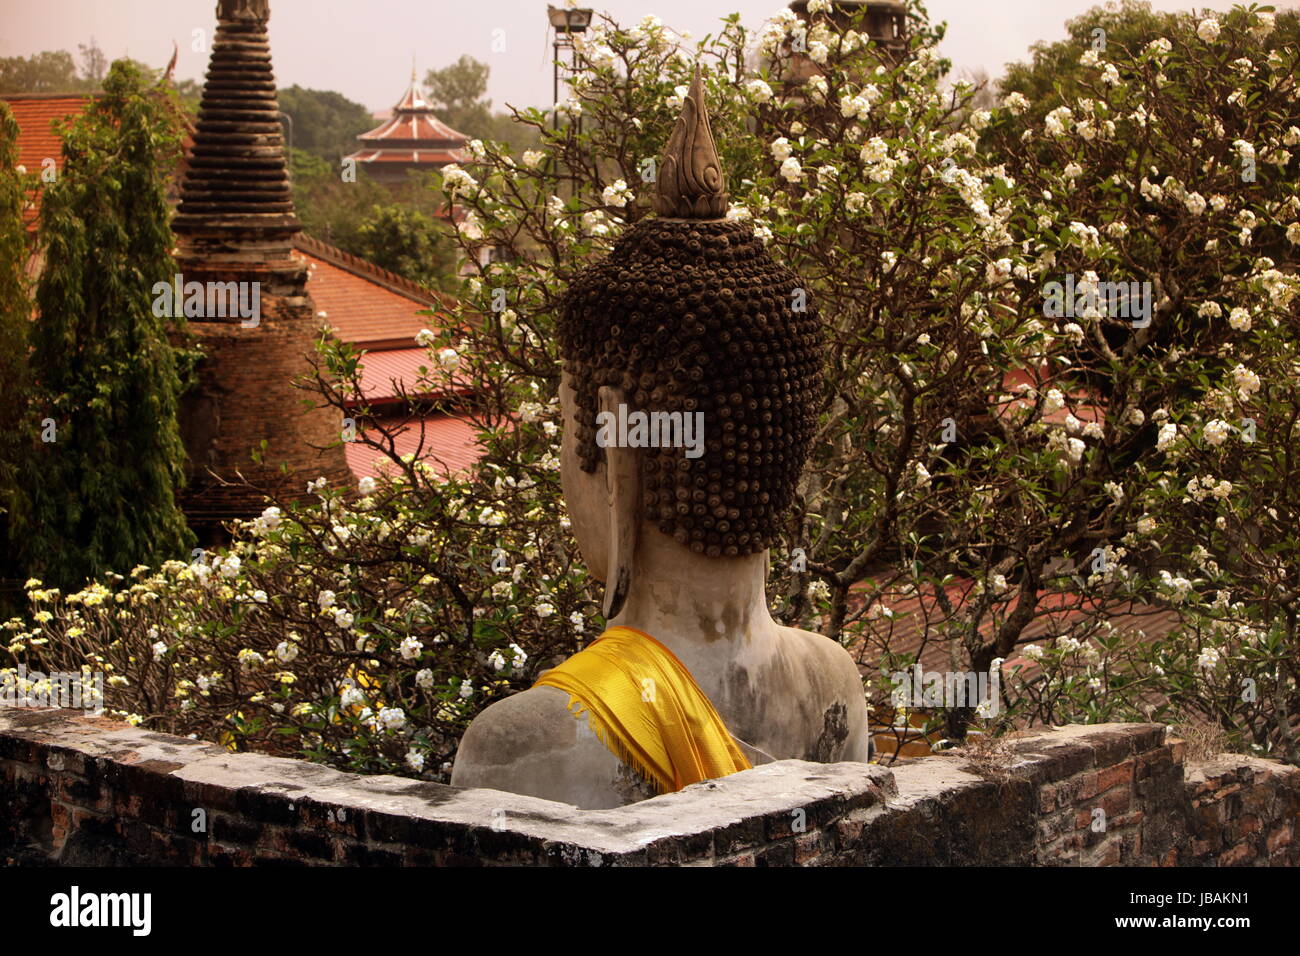 Der Wat Yai Chai Tempel in der Tempelstadt Ayutthaya noerdlich von Bangkok in Thailand. Stock Photo